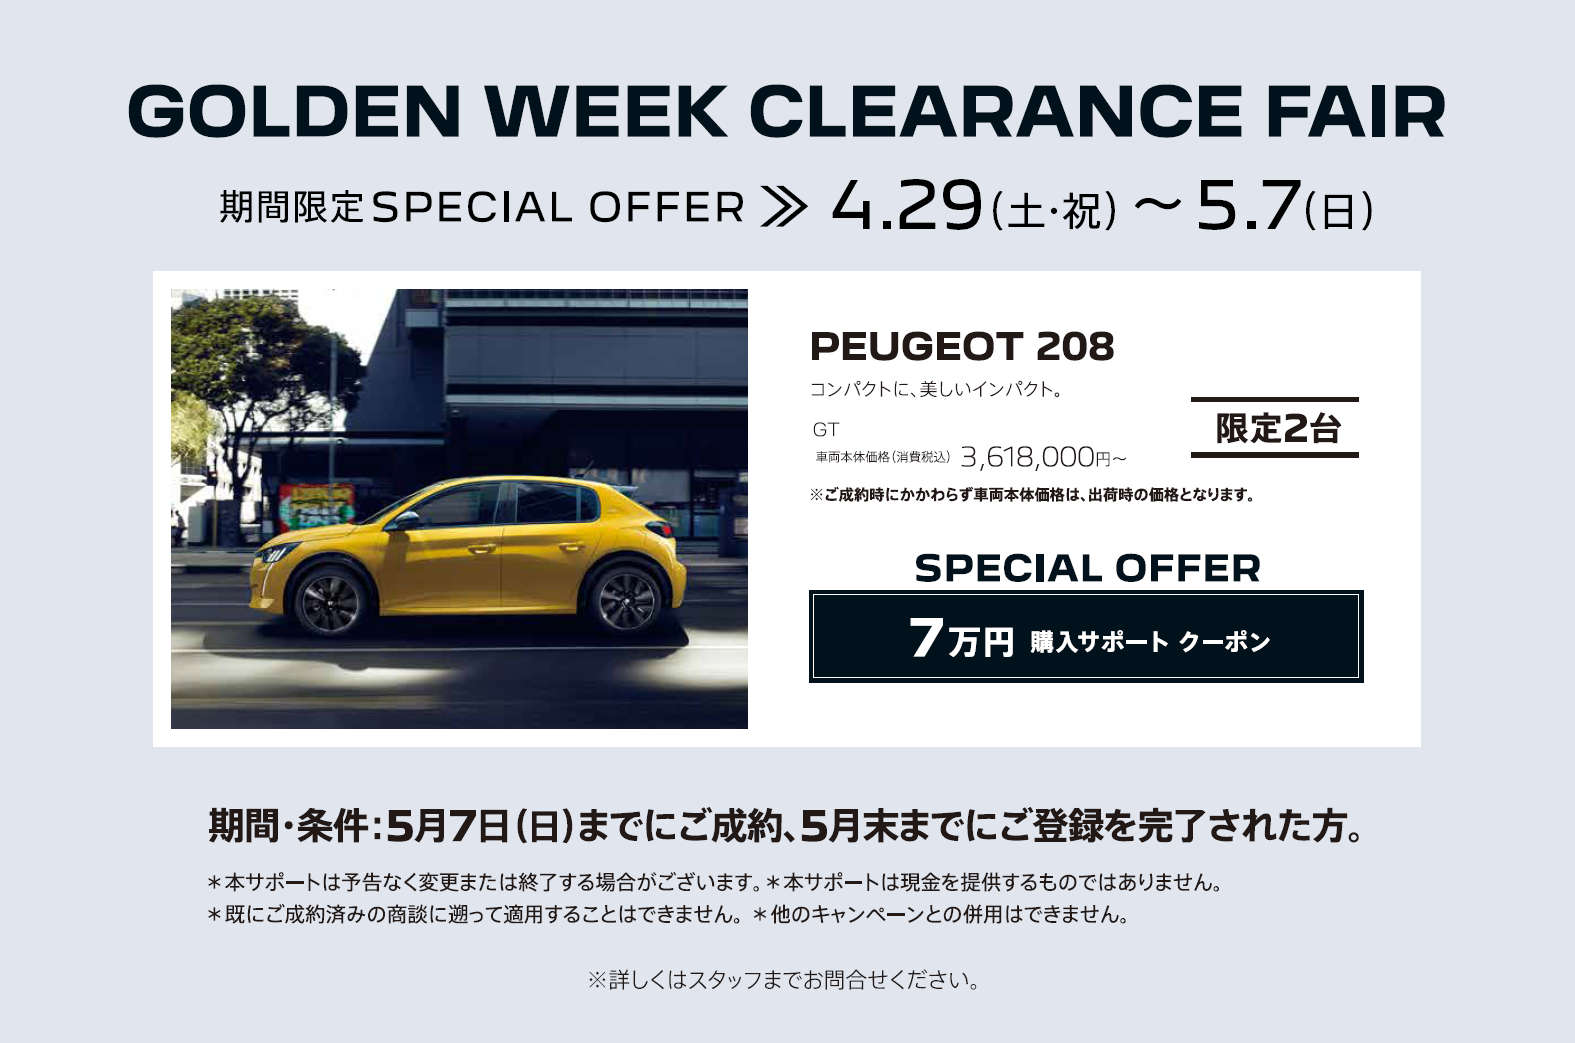 SPECIAL OFFER / GOLDEN WEEK CLEARANCE FAIR 対象車種：NEW208 | GOLDEN WEEK CLEARANCE FAIR。